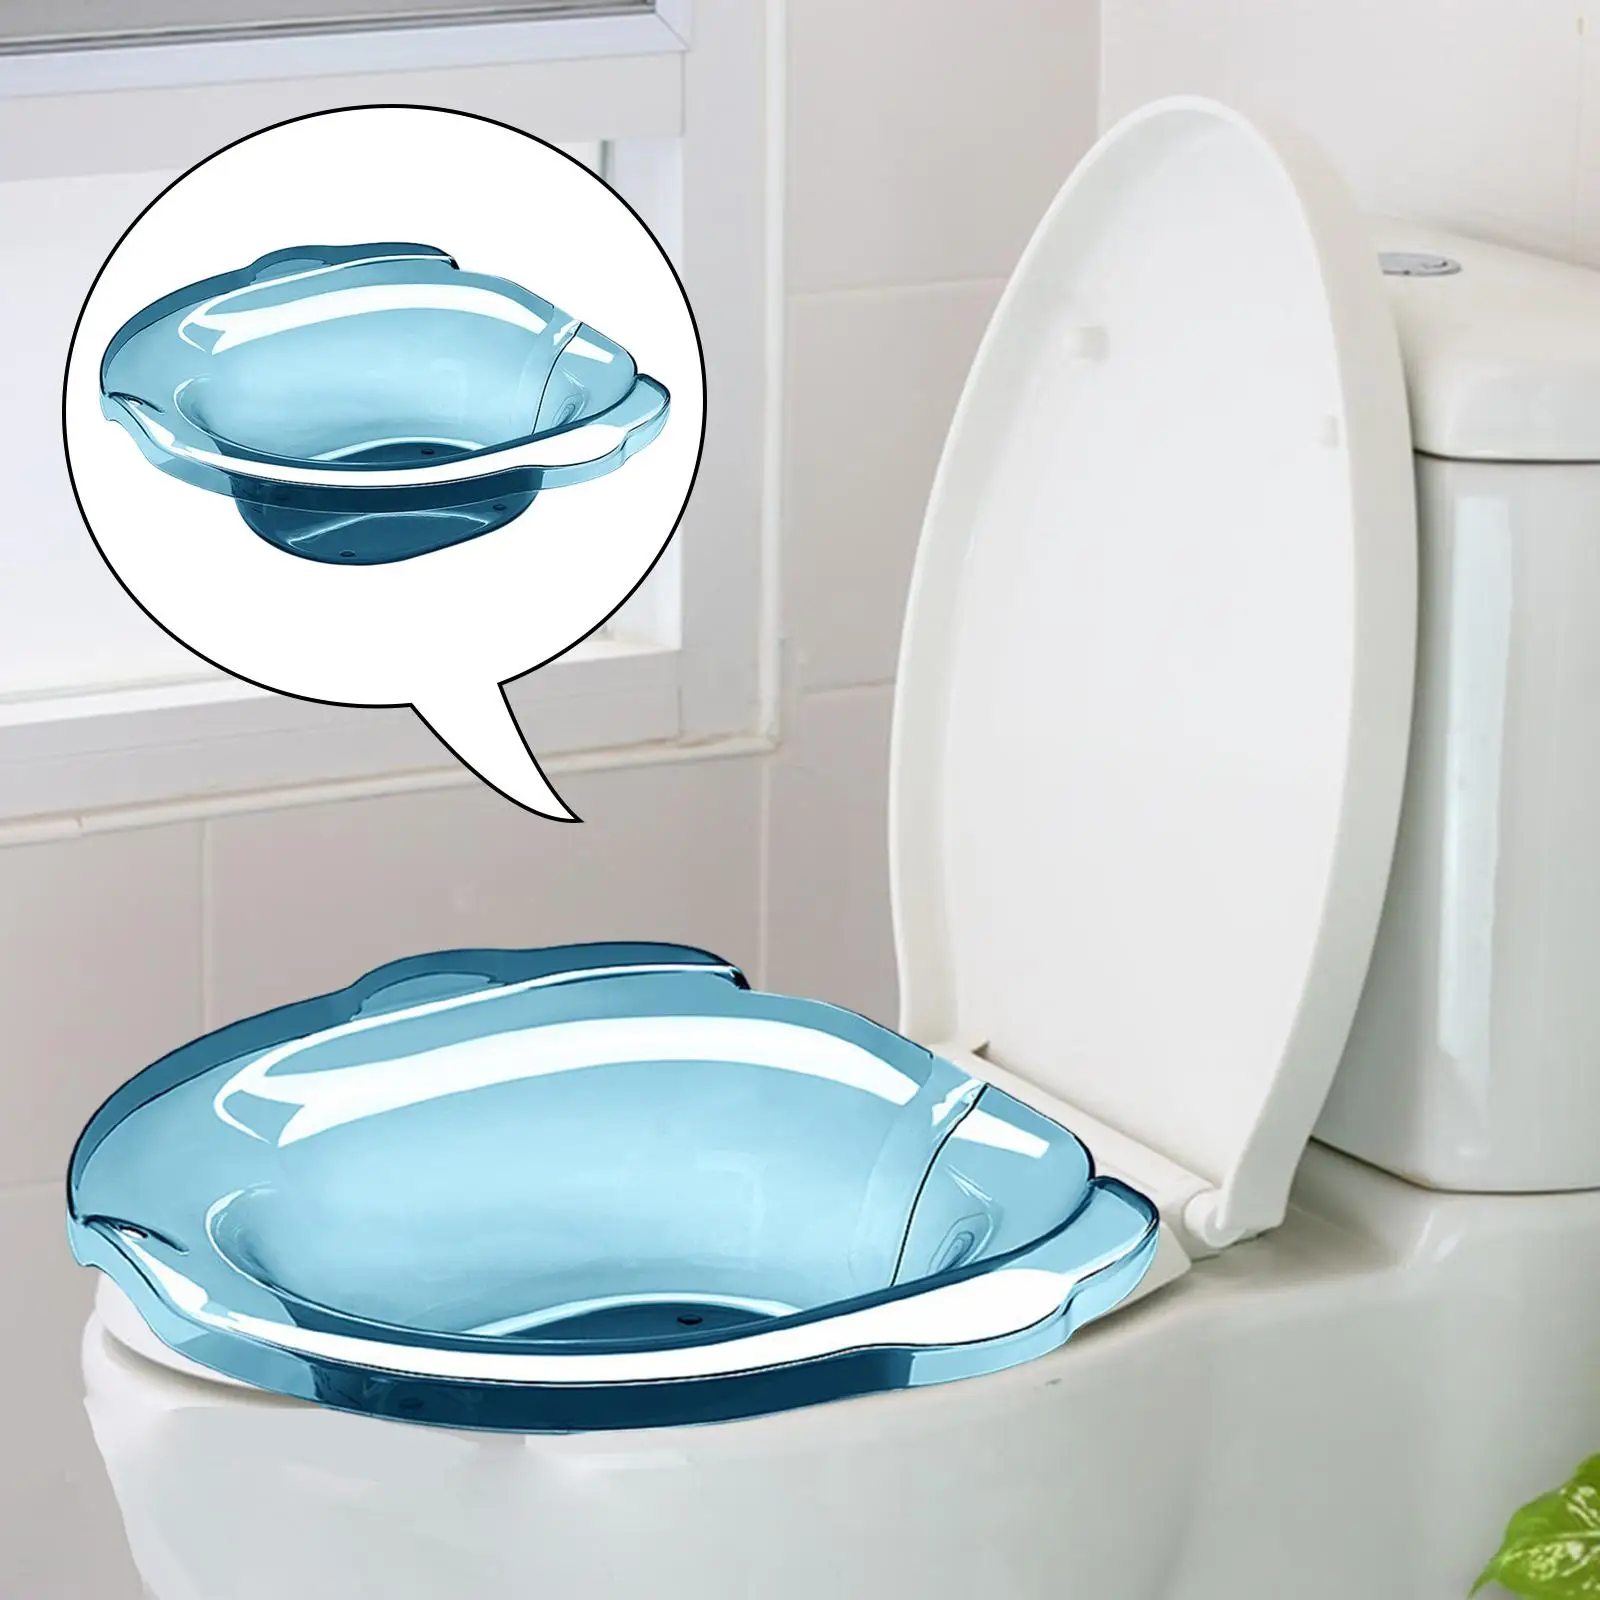 Sitz Bath for Toilet Seat Toilet Tub Bidet for Washing Most Toilets Adults Women Sitz Bath Toilet Bidet Tub Steaming Basin